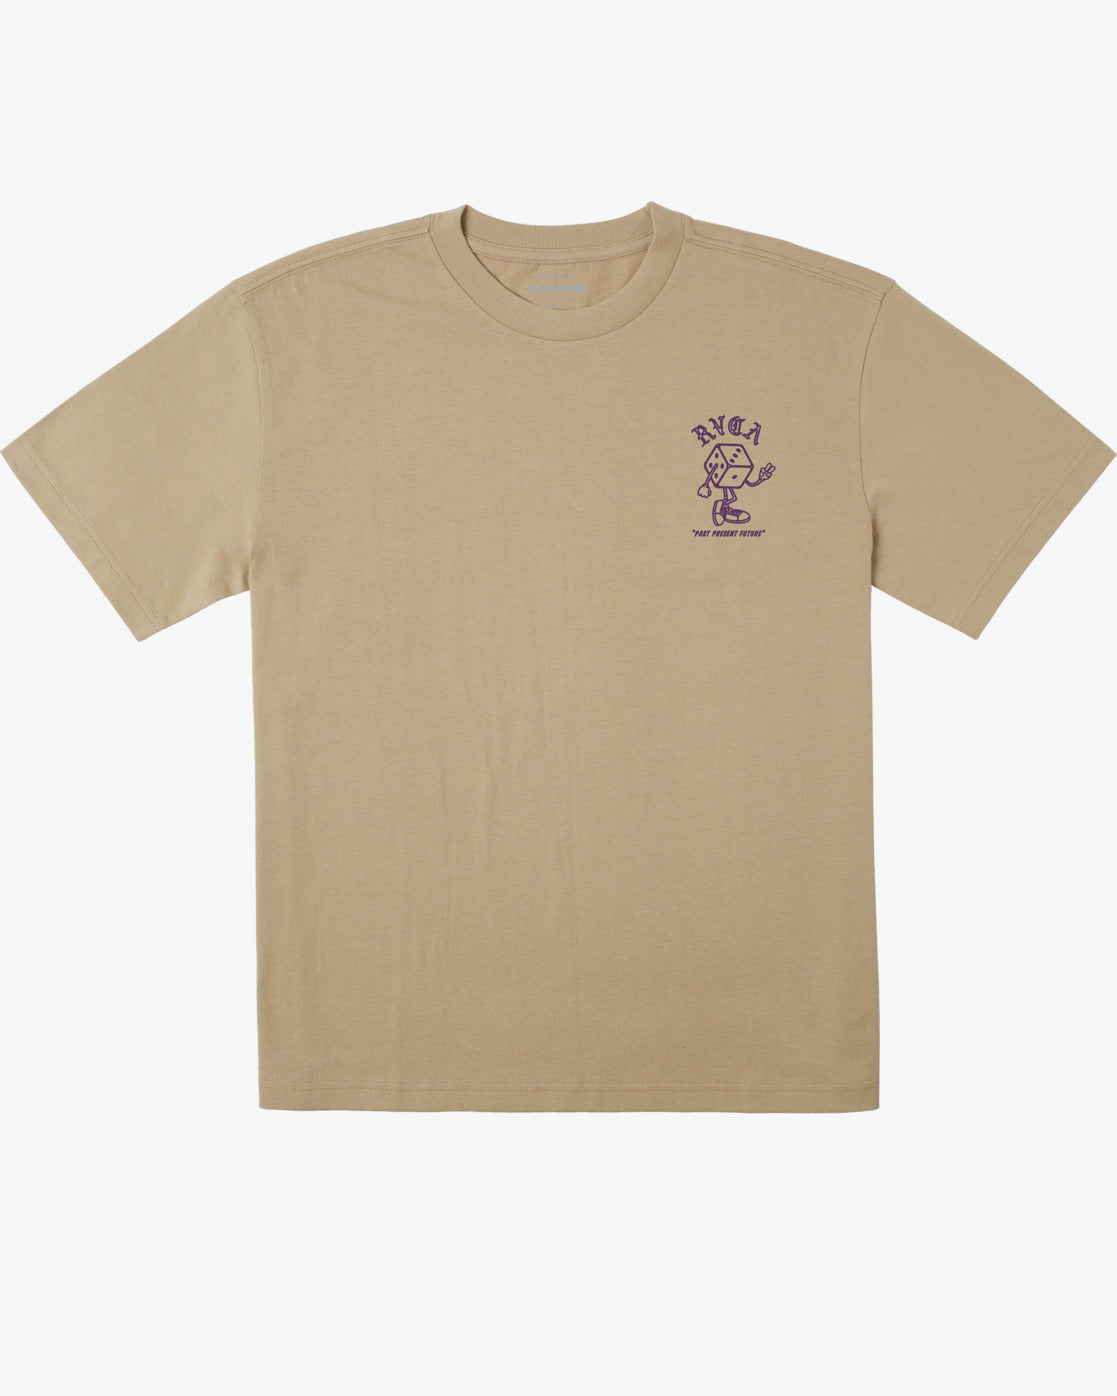 RVCA Pair O Dice Men's Tee - Khaki Mens T Shirt